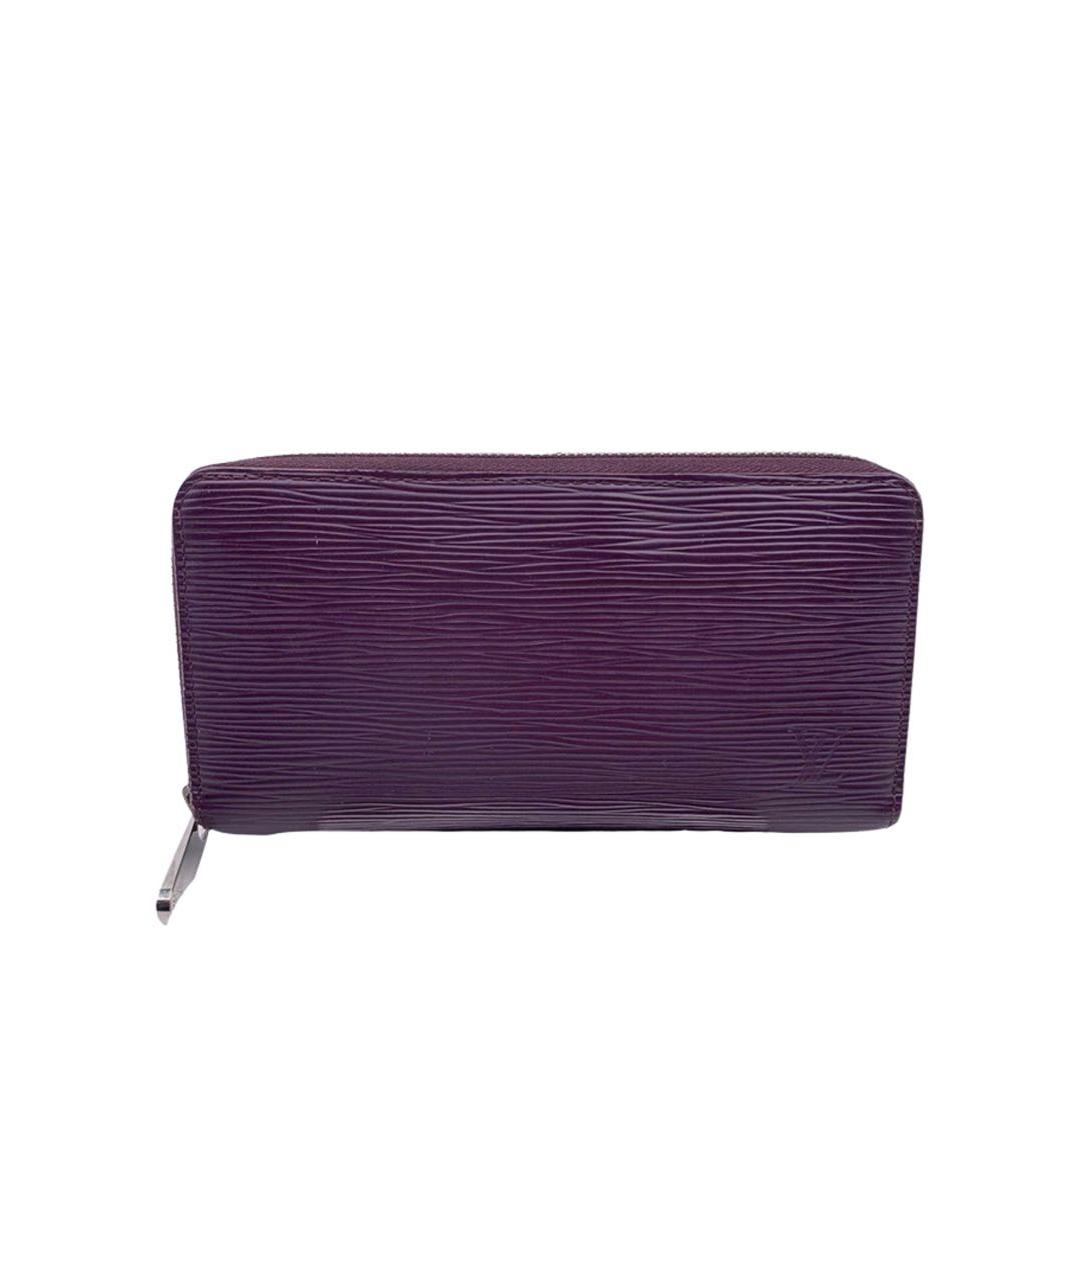 LOUIS VUITTON PRE-OWNED Фиолетовый кожаный кошелек, фото 1